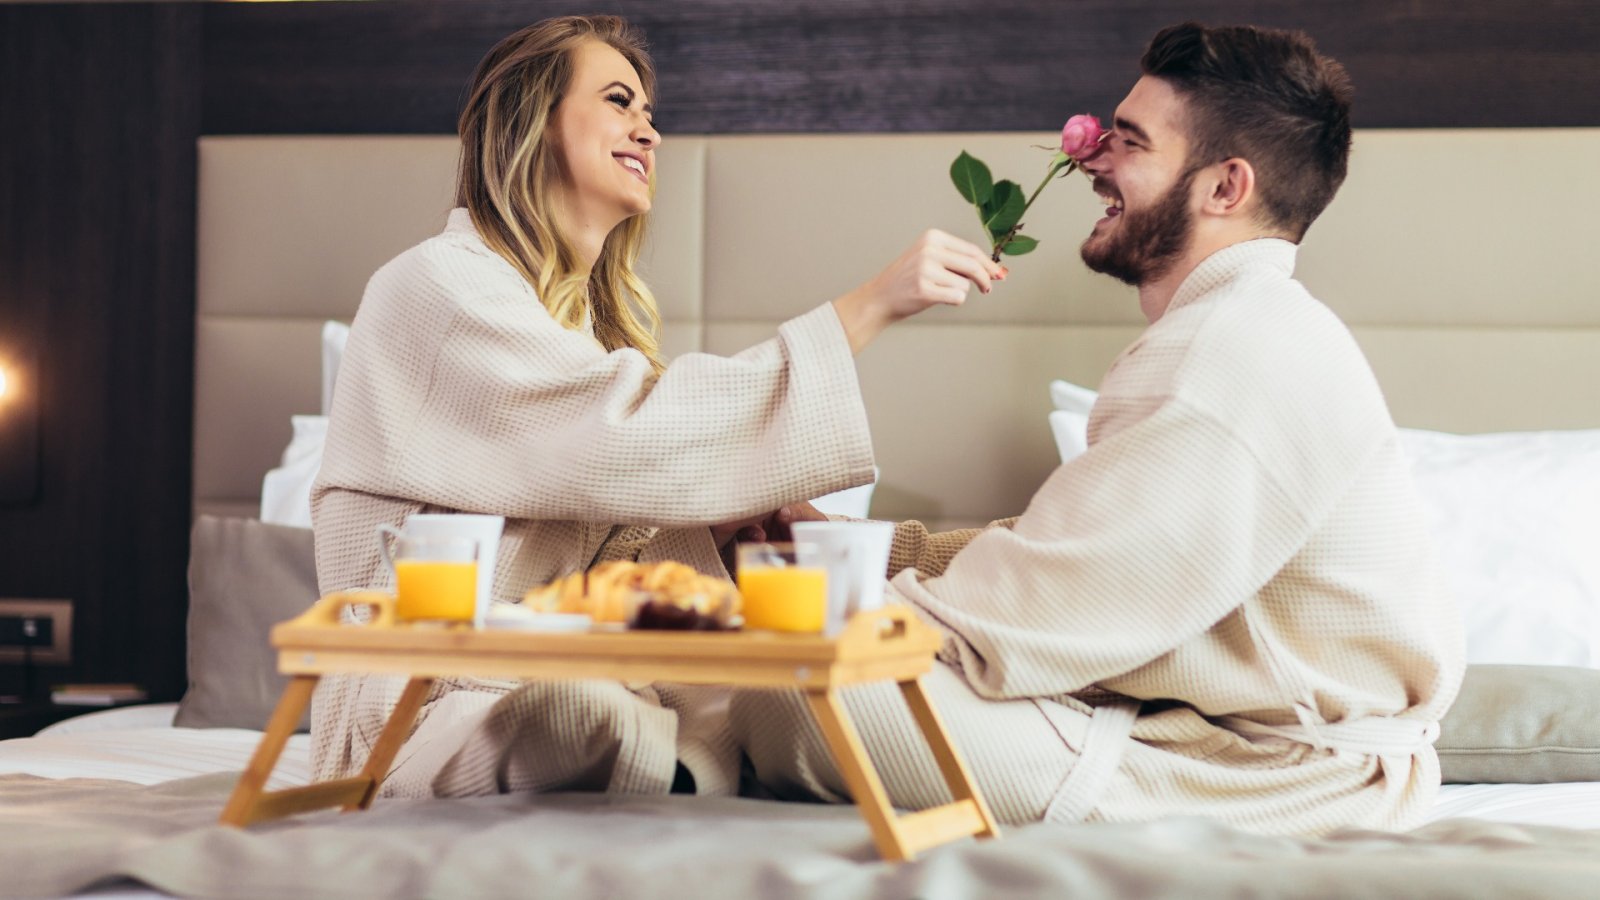 Tag din partner med til et af disse romantiske hoteller i New York City